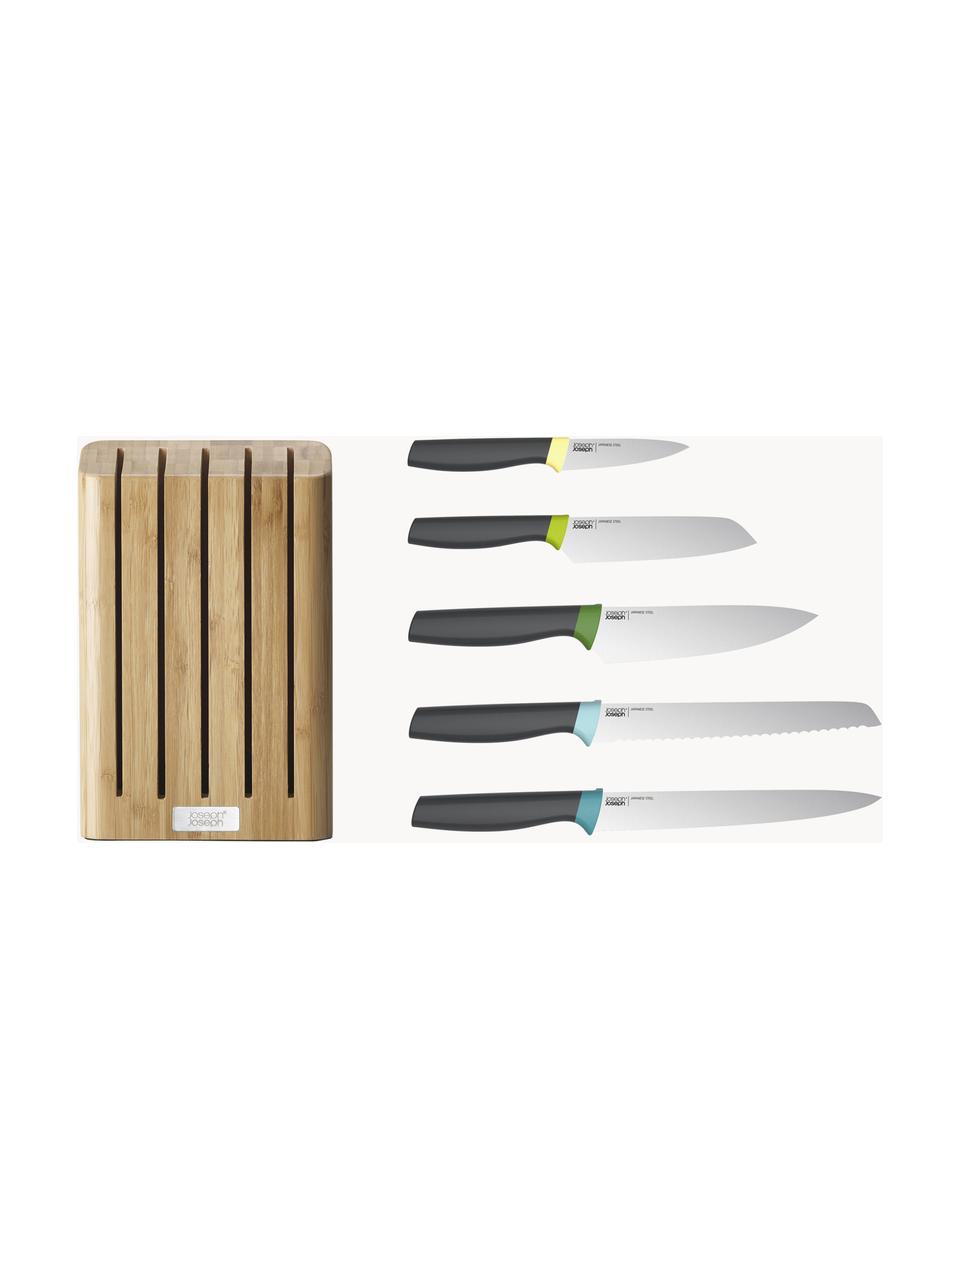 Messerblock Elevate Slim mit 5 Messern, Messer: Edelstahl, Griff: Polypropylen, Thermoplast, Beige, Schwarz, Verschiedene Größen